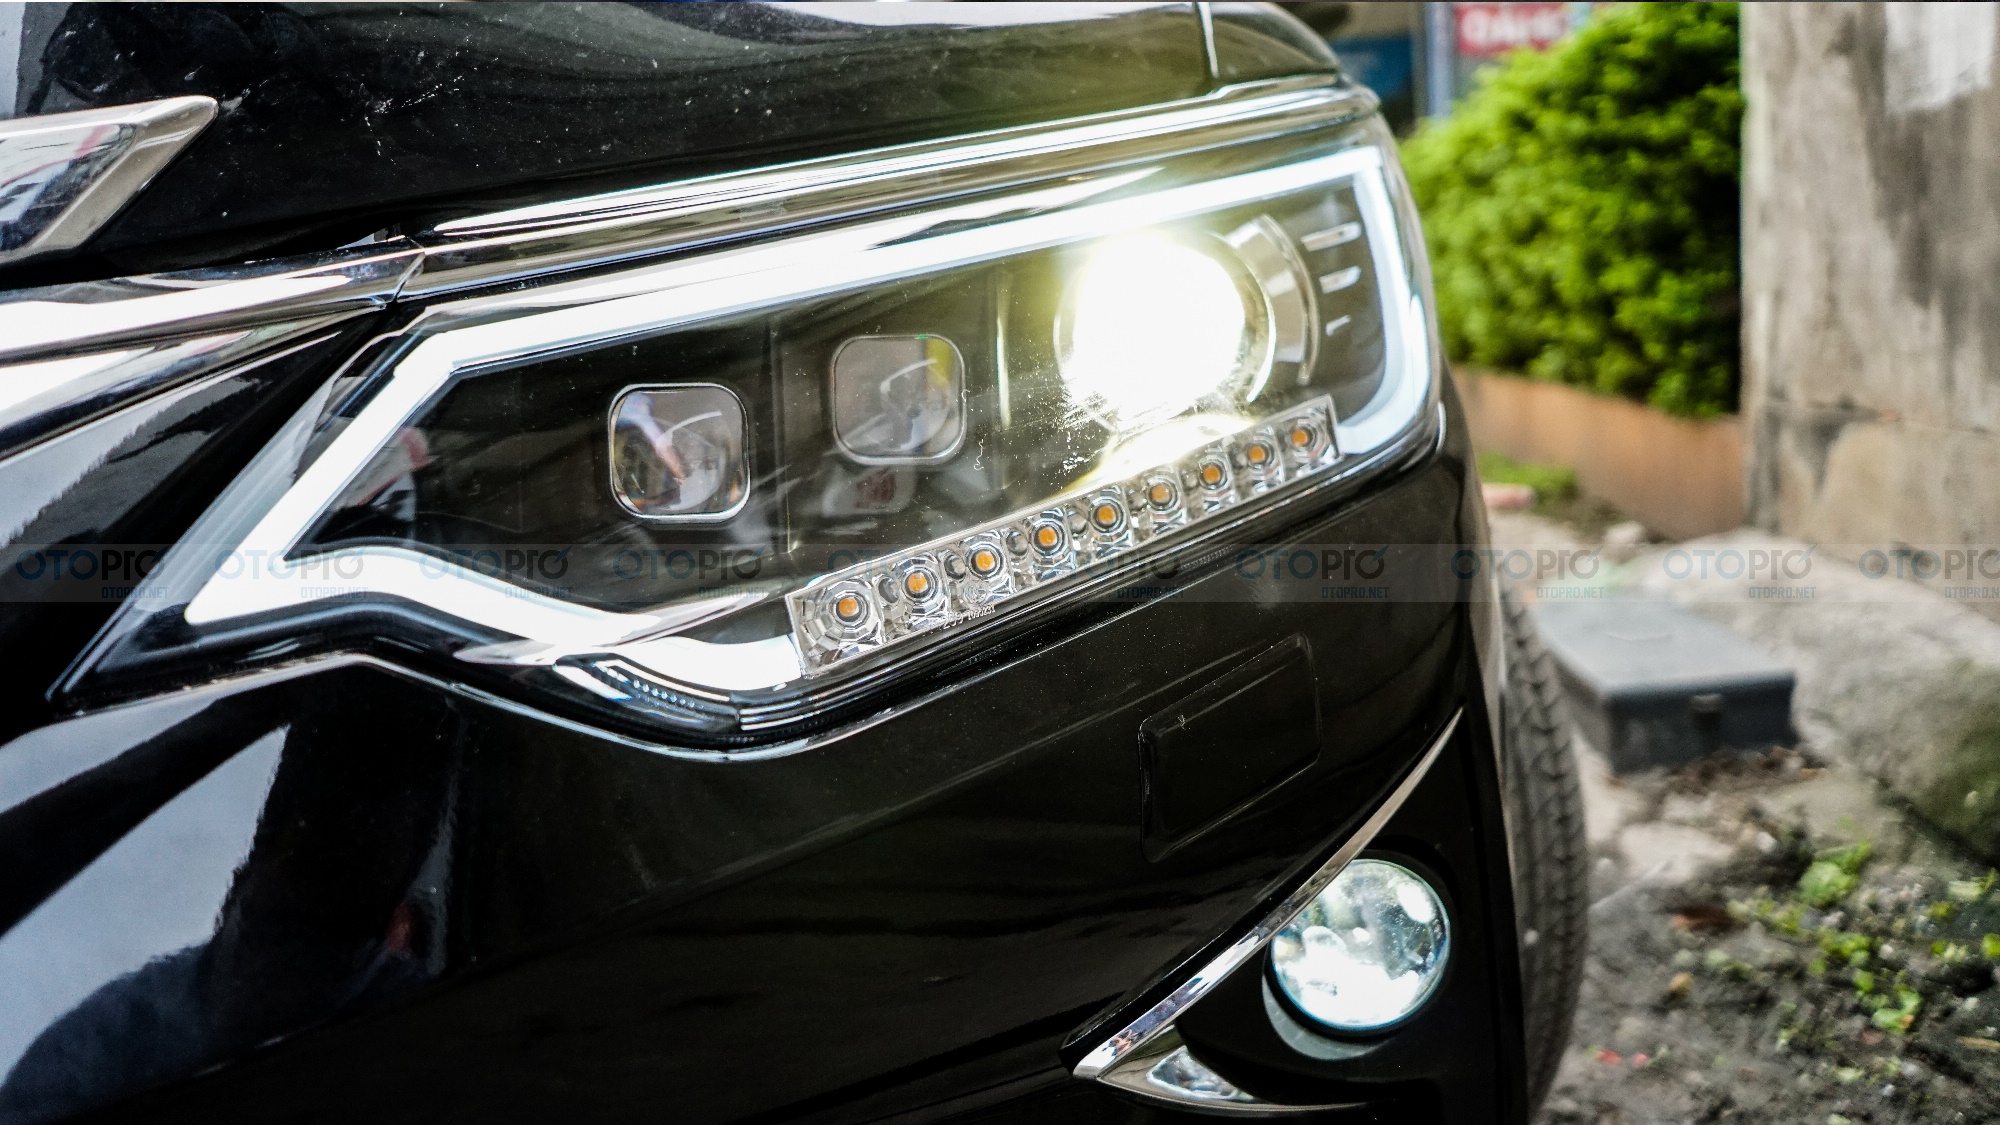 Toyota Camry 2.5G 2013 độ bodykit Lexus chính hãng